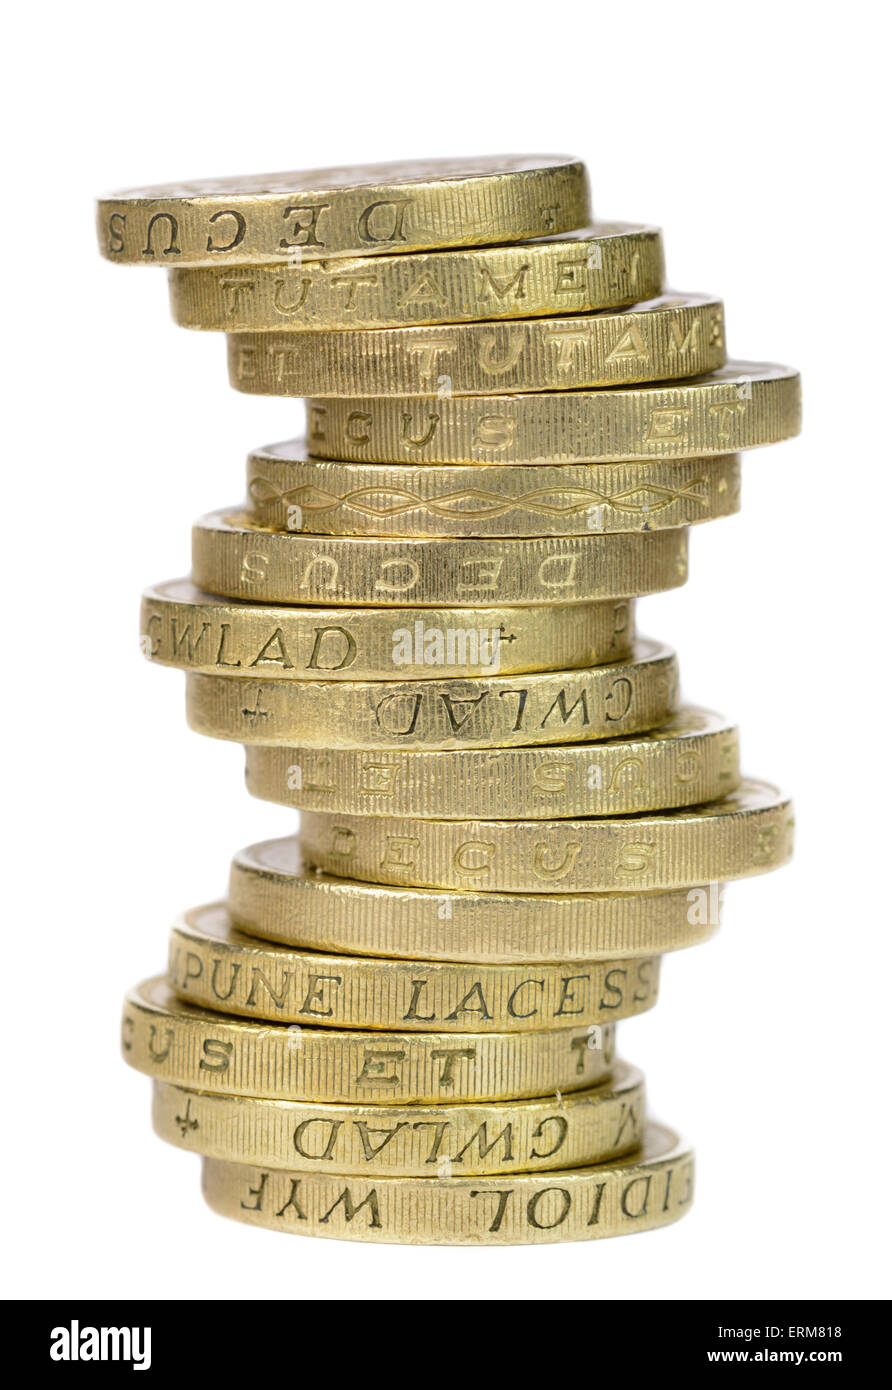 De vieux €1 pièces de monnaie, la monnaie du Royaume-Uni, sur un fond blanc. Pile de pièces découpe. Banque D'Images